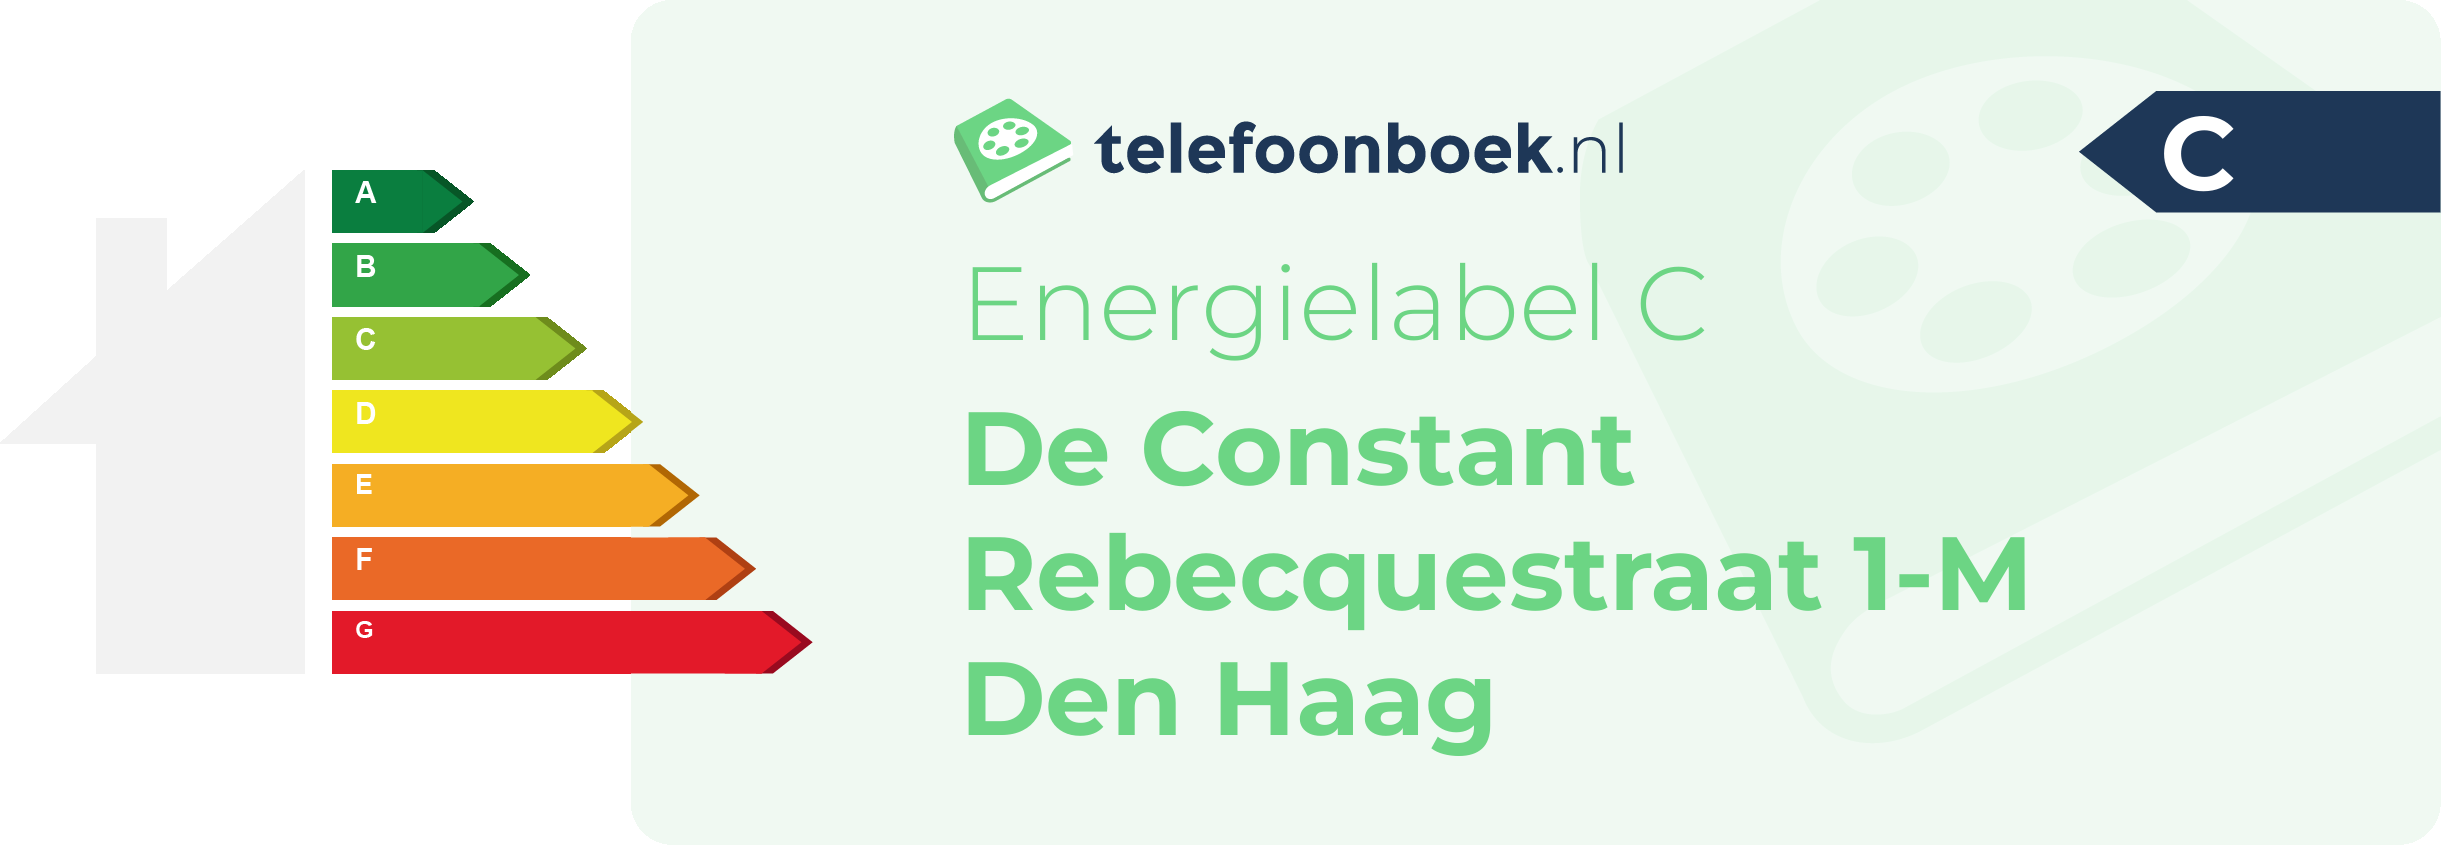 Energielabel De Constant Rebecquestraat 1-M Den Haag